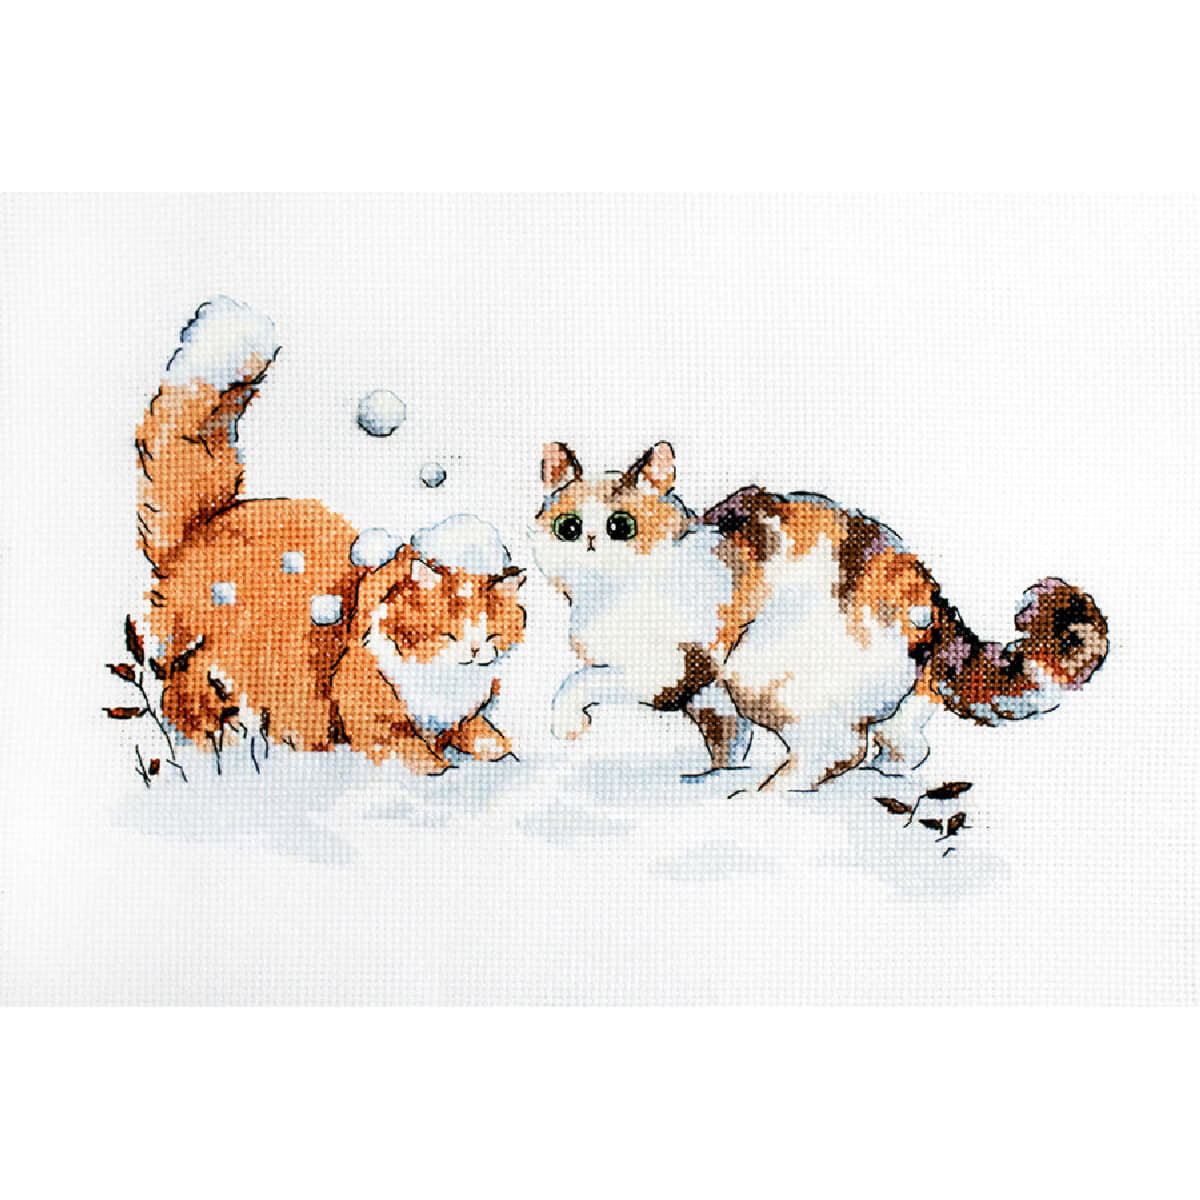 Изображение двух кошек, играющих в снегу, идеально...